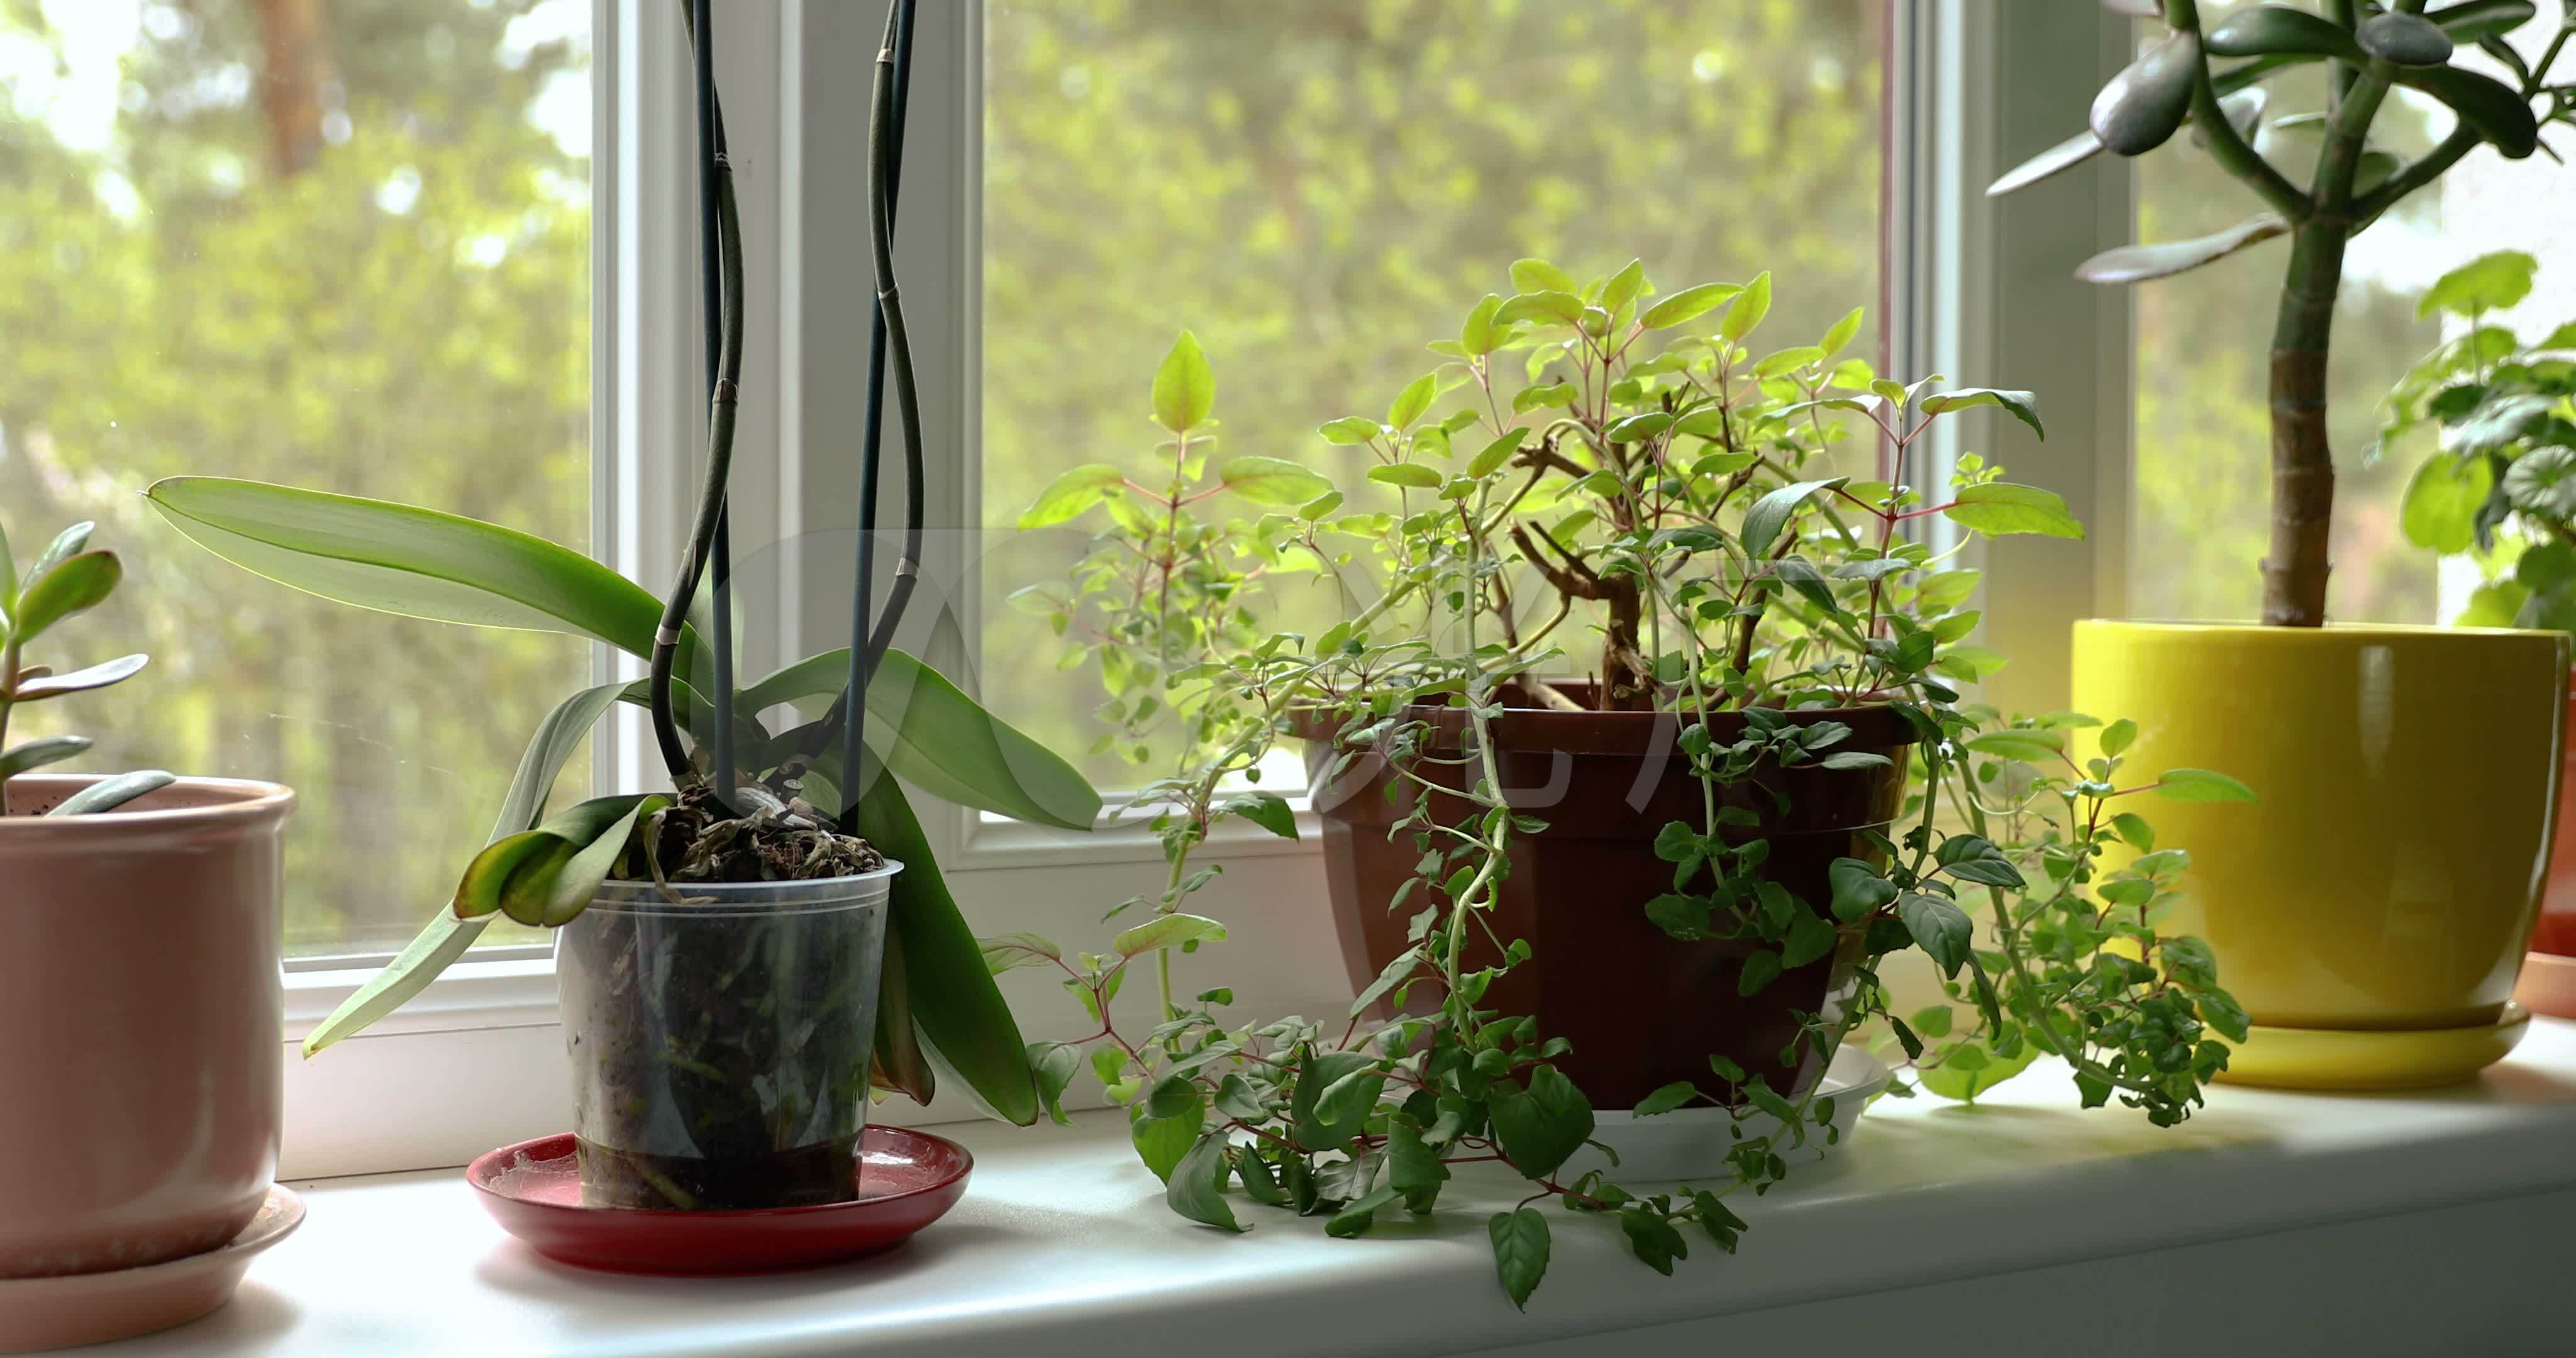 窗台上的室内盆栽